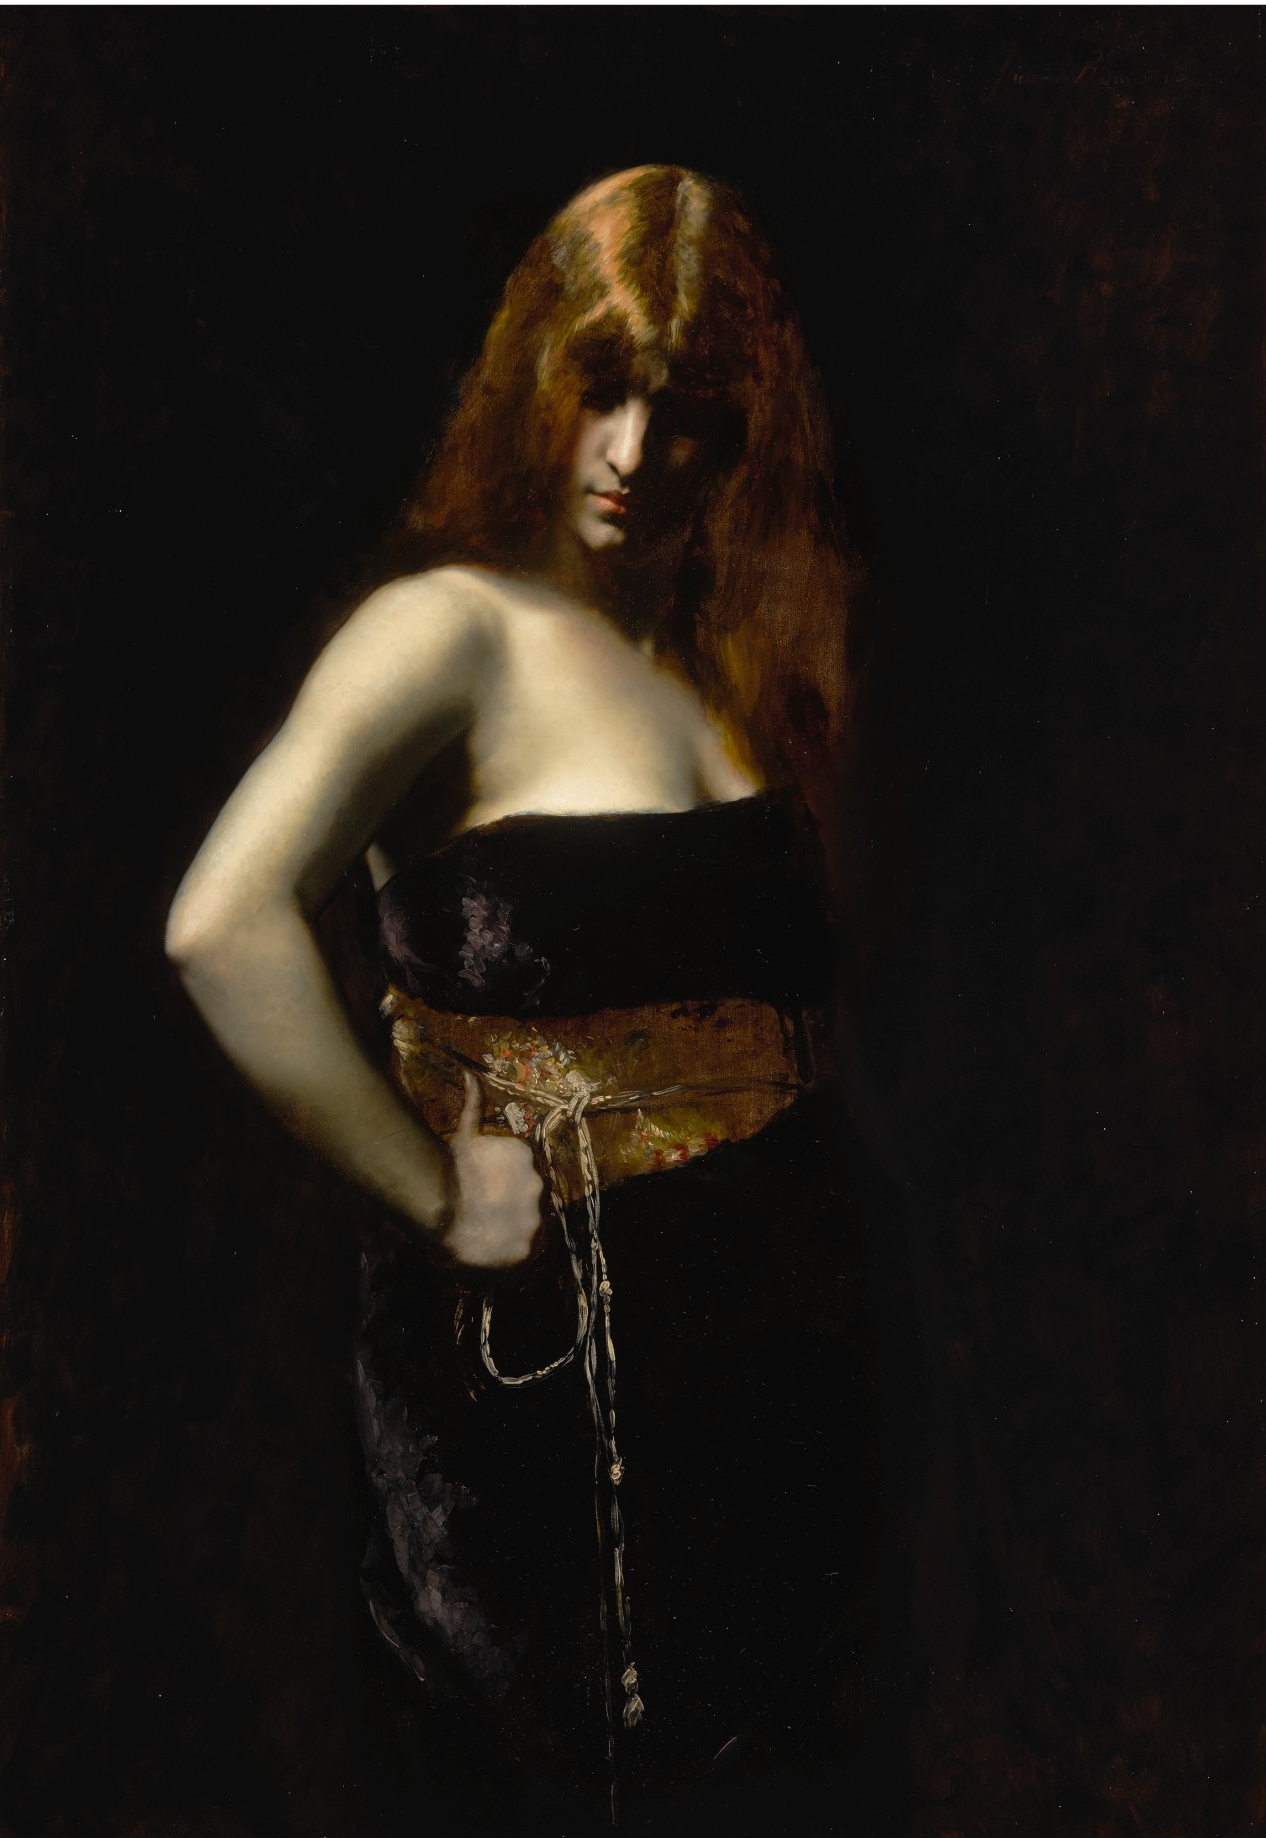 Porträt einer Frau mit rotem Haar by Juana Romani - zweite Hälfte des 19. Jhd. - 116.5 x 80 cm Private Sammlung